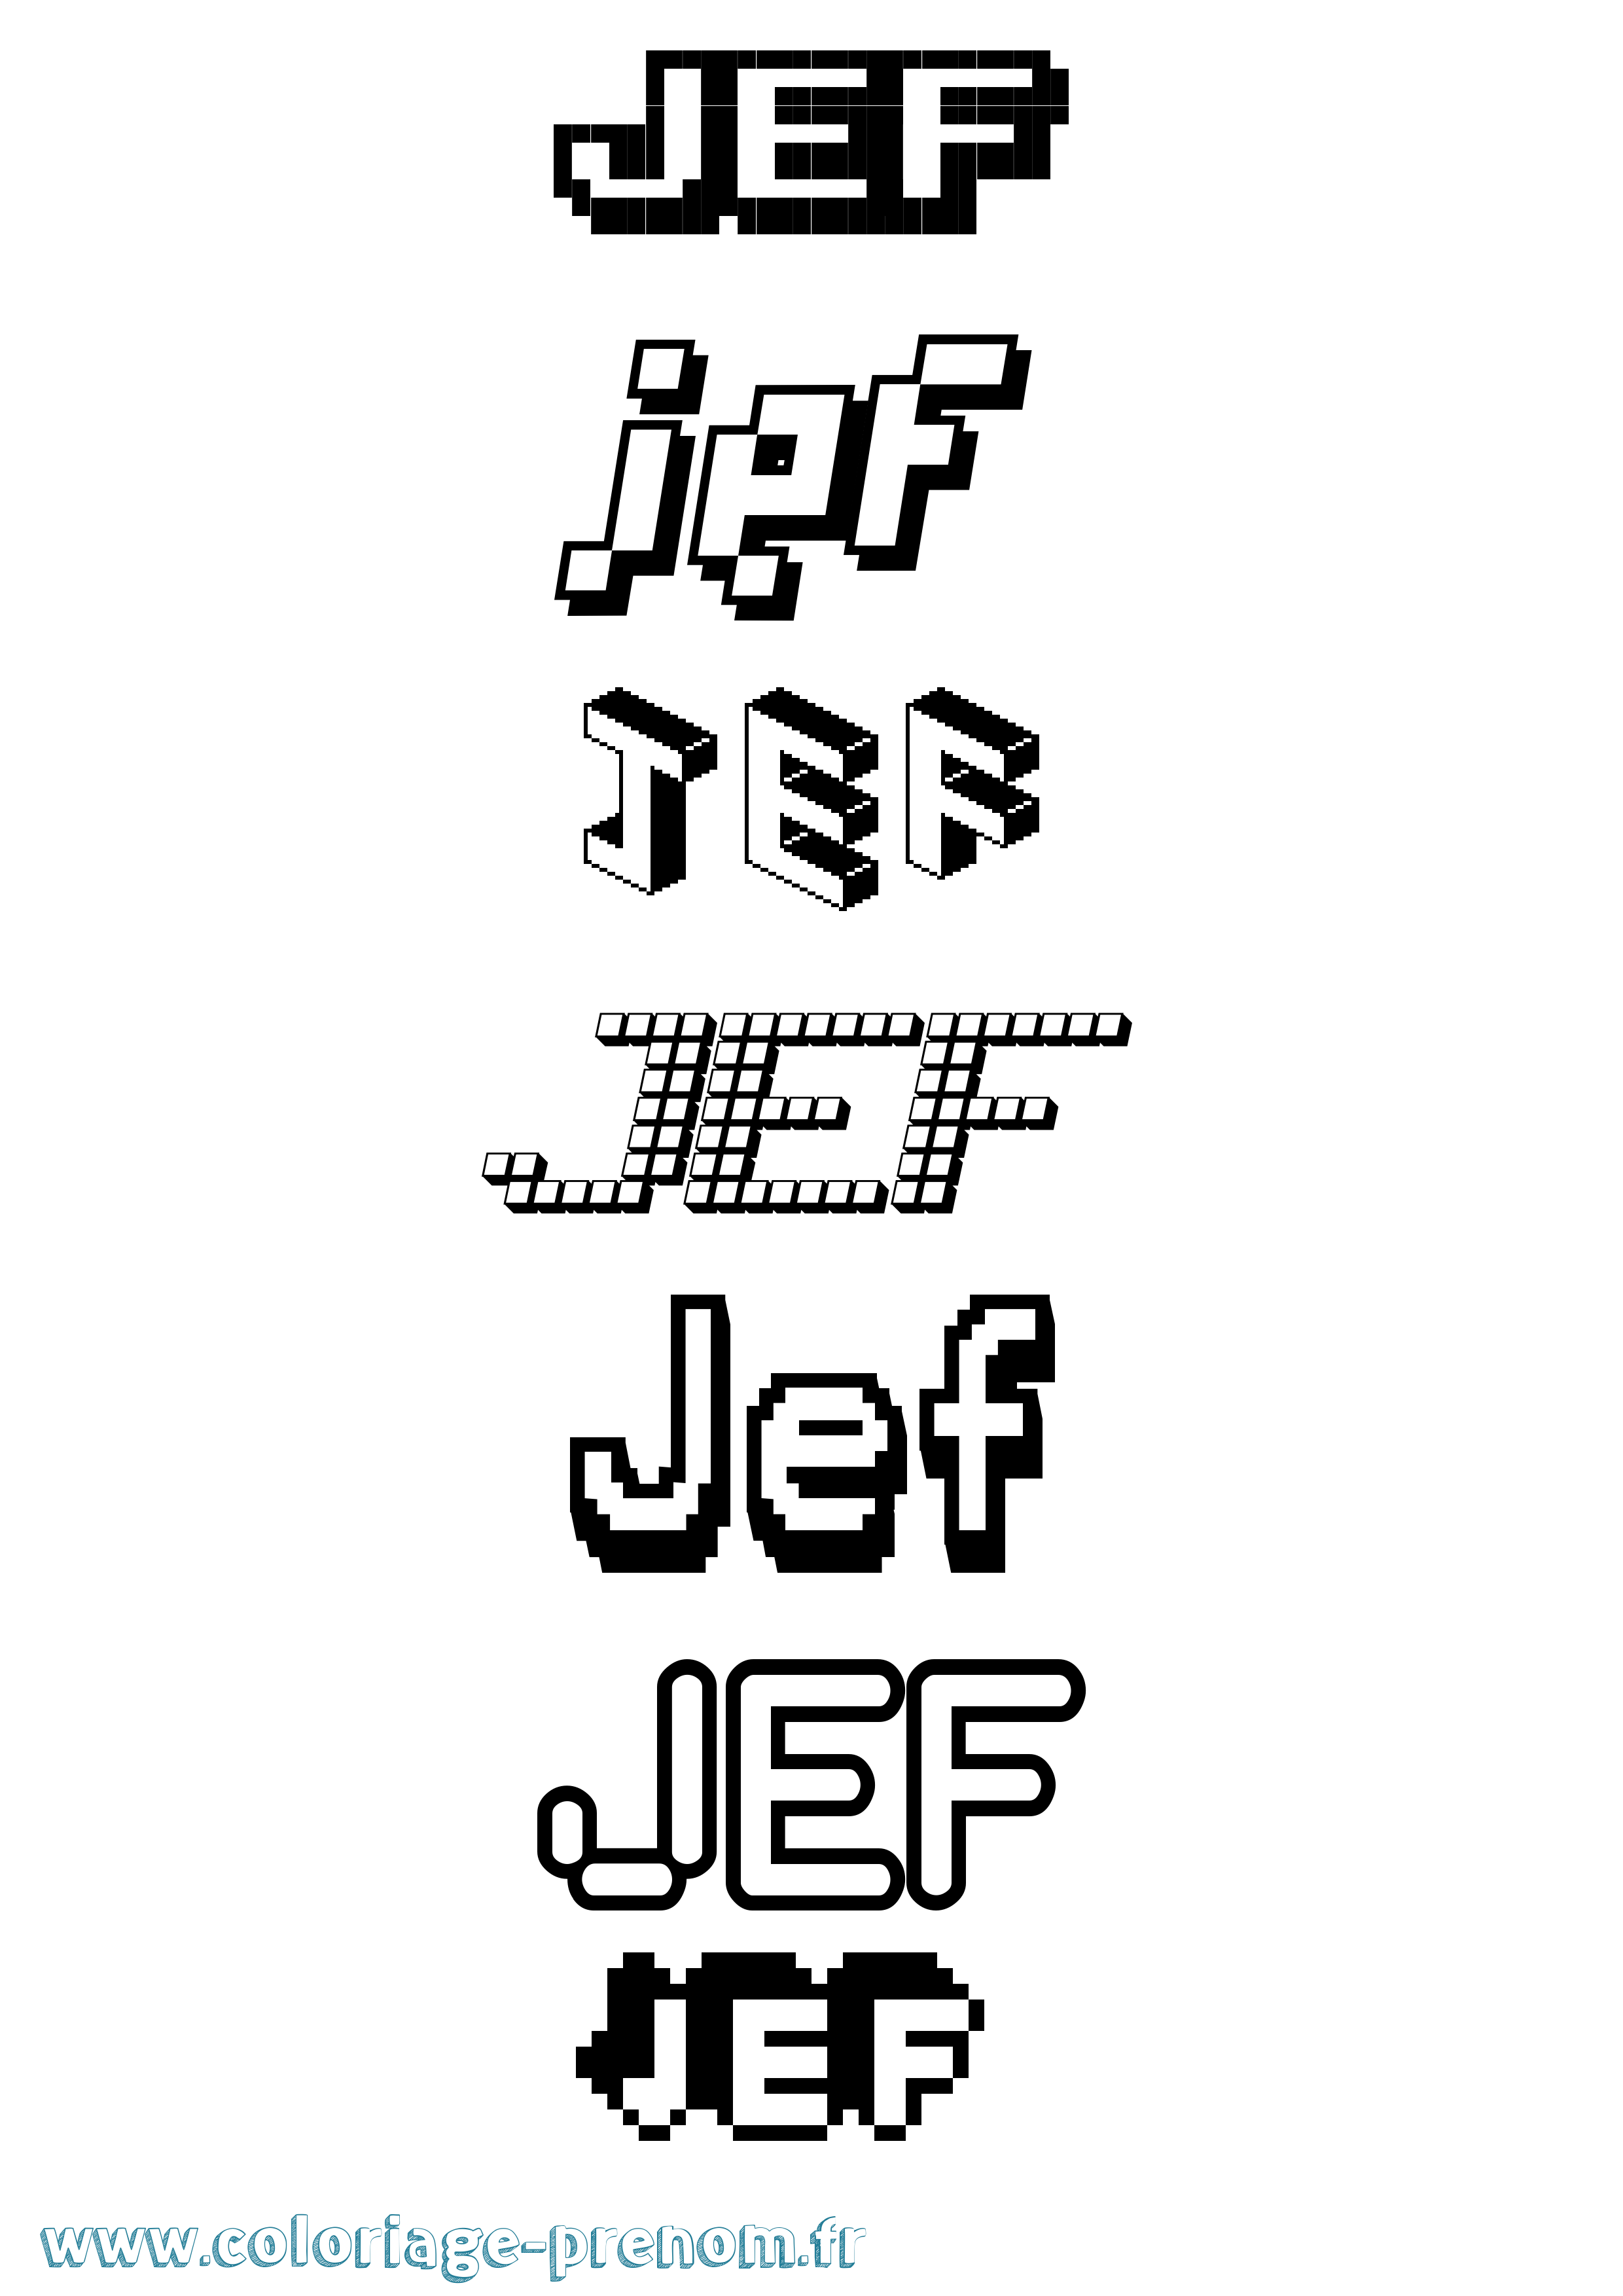 Coloriage prénom Jef Pixel